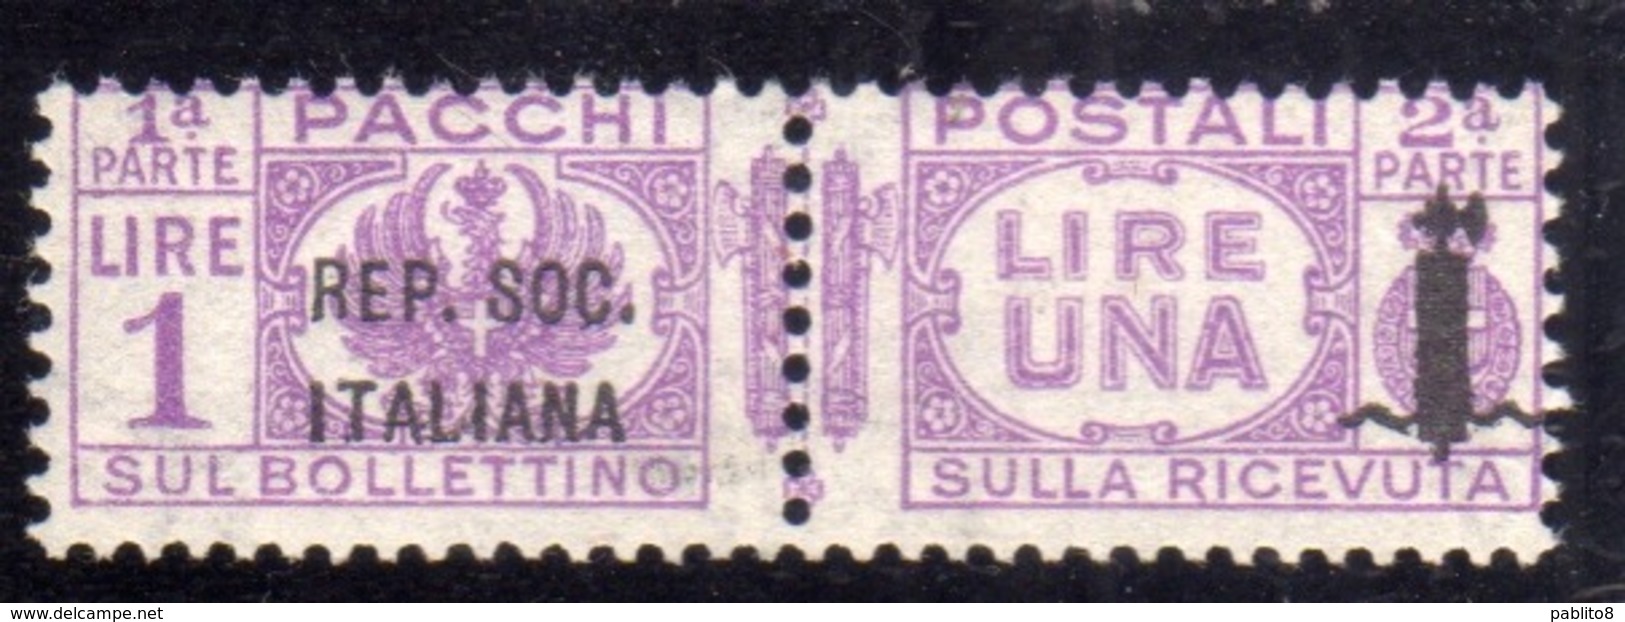 ITALIA REGNO ITALY KINGDOM 1944 RSI REPUBBLICA SOCIALE PACCHI FASCIETTO LIRE 1 LIRA MNH - Pacchi Postali